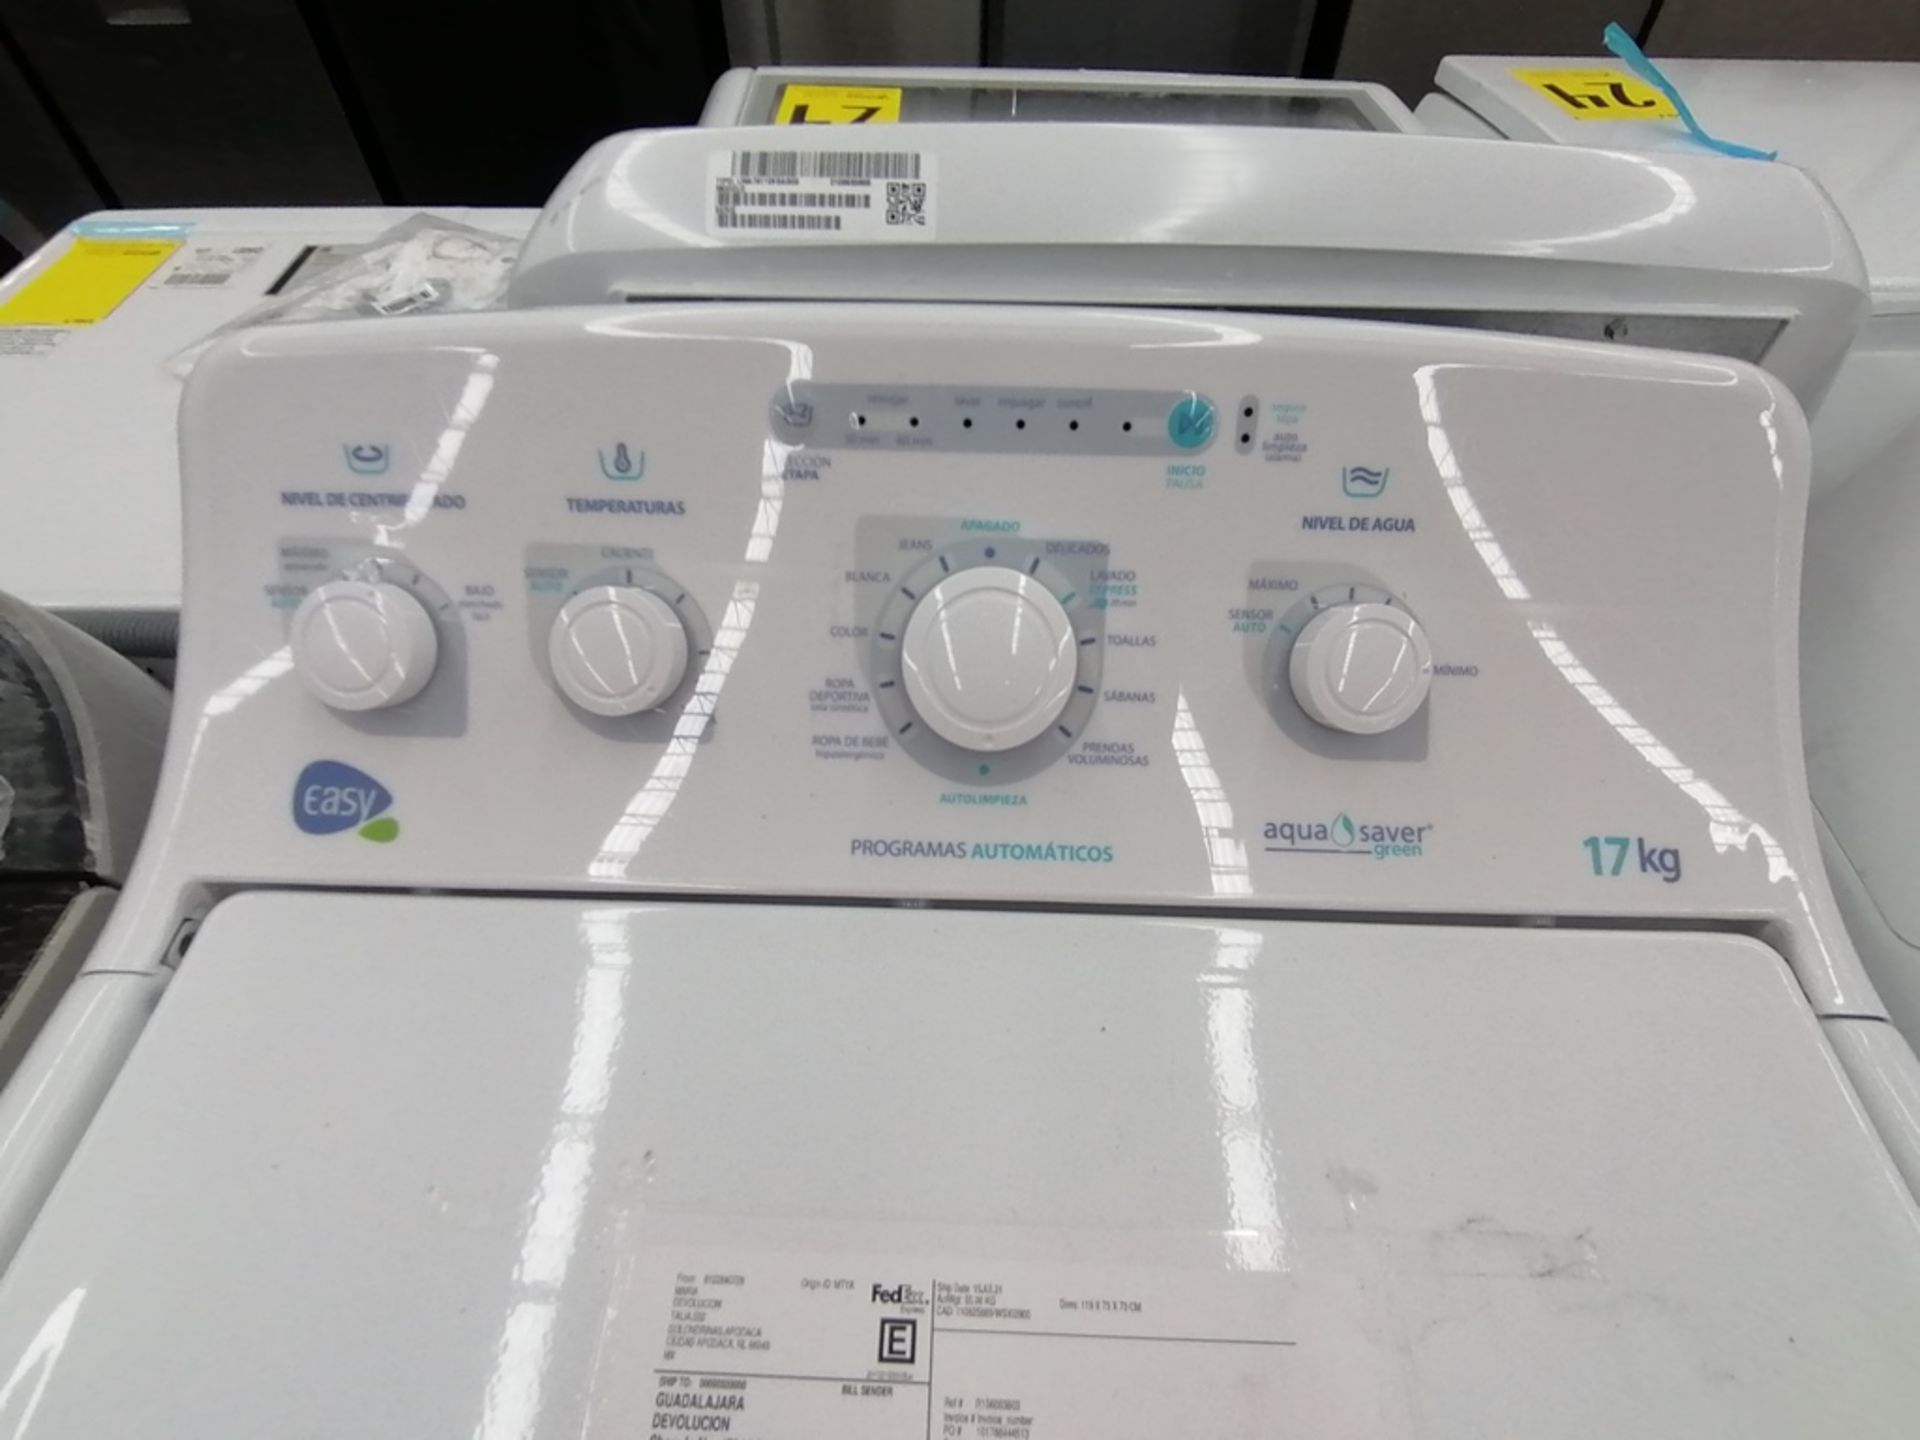 Lote de 3 lavadoras contiene: 1 Lavadora de 17KG, Marca Easy, Modelo LEA77114CBAB03, Serie 2105S522 - Image 27 of 30